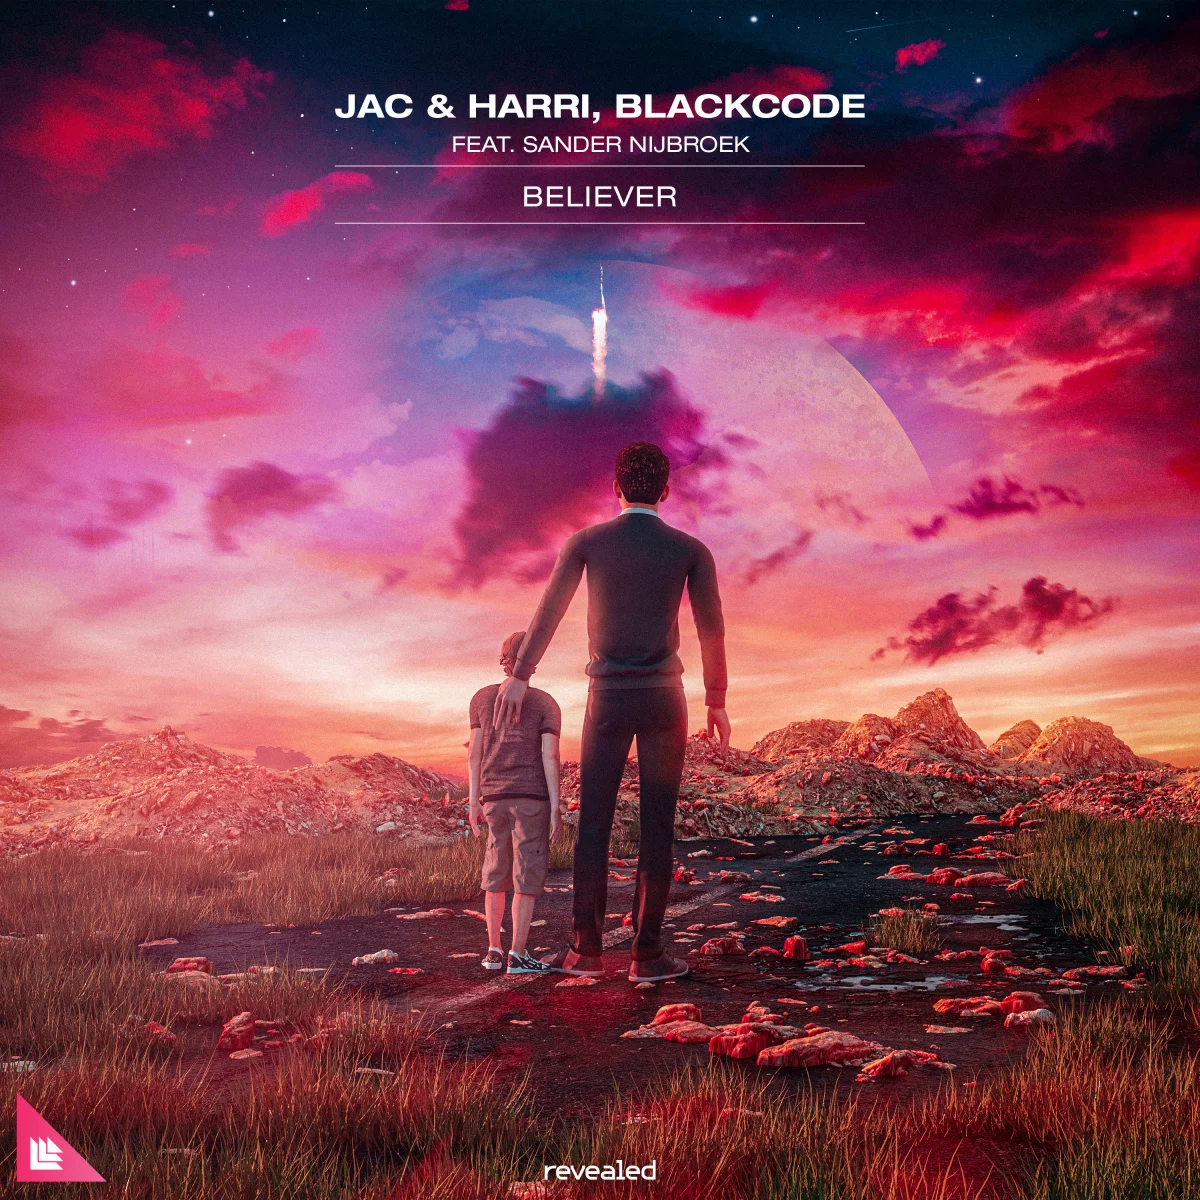 Believer - Jac & Harri⁠, Blackcode⁠ feat. Sander Nijbroek